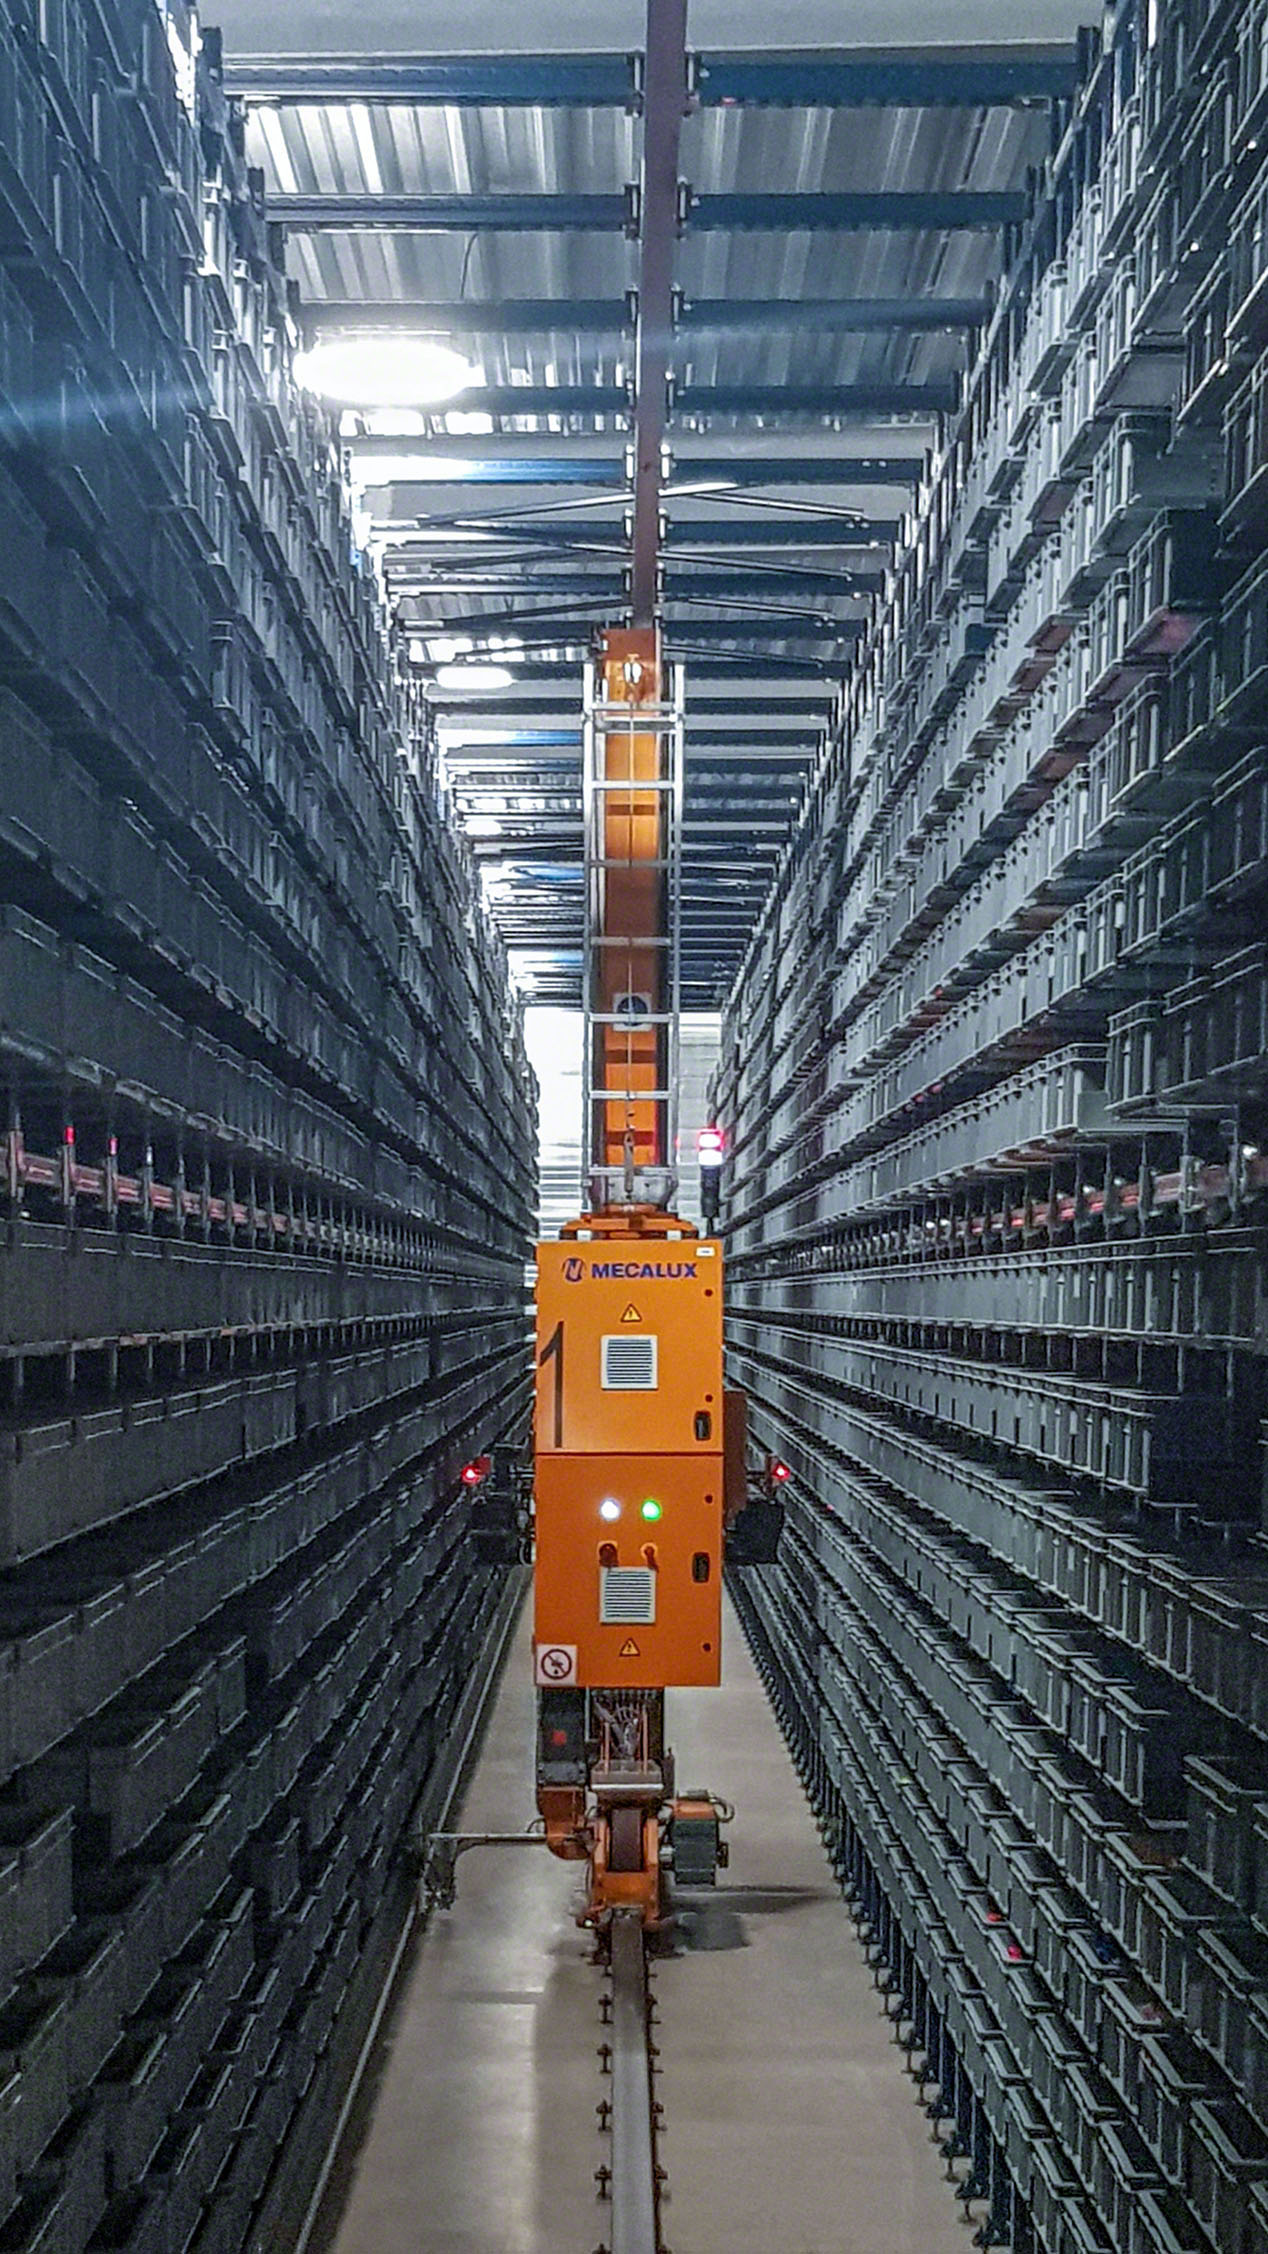 Almacenaje automático de 7.800 cajas con piezas de juguetes